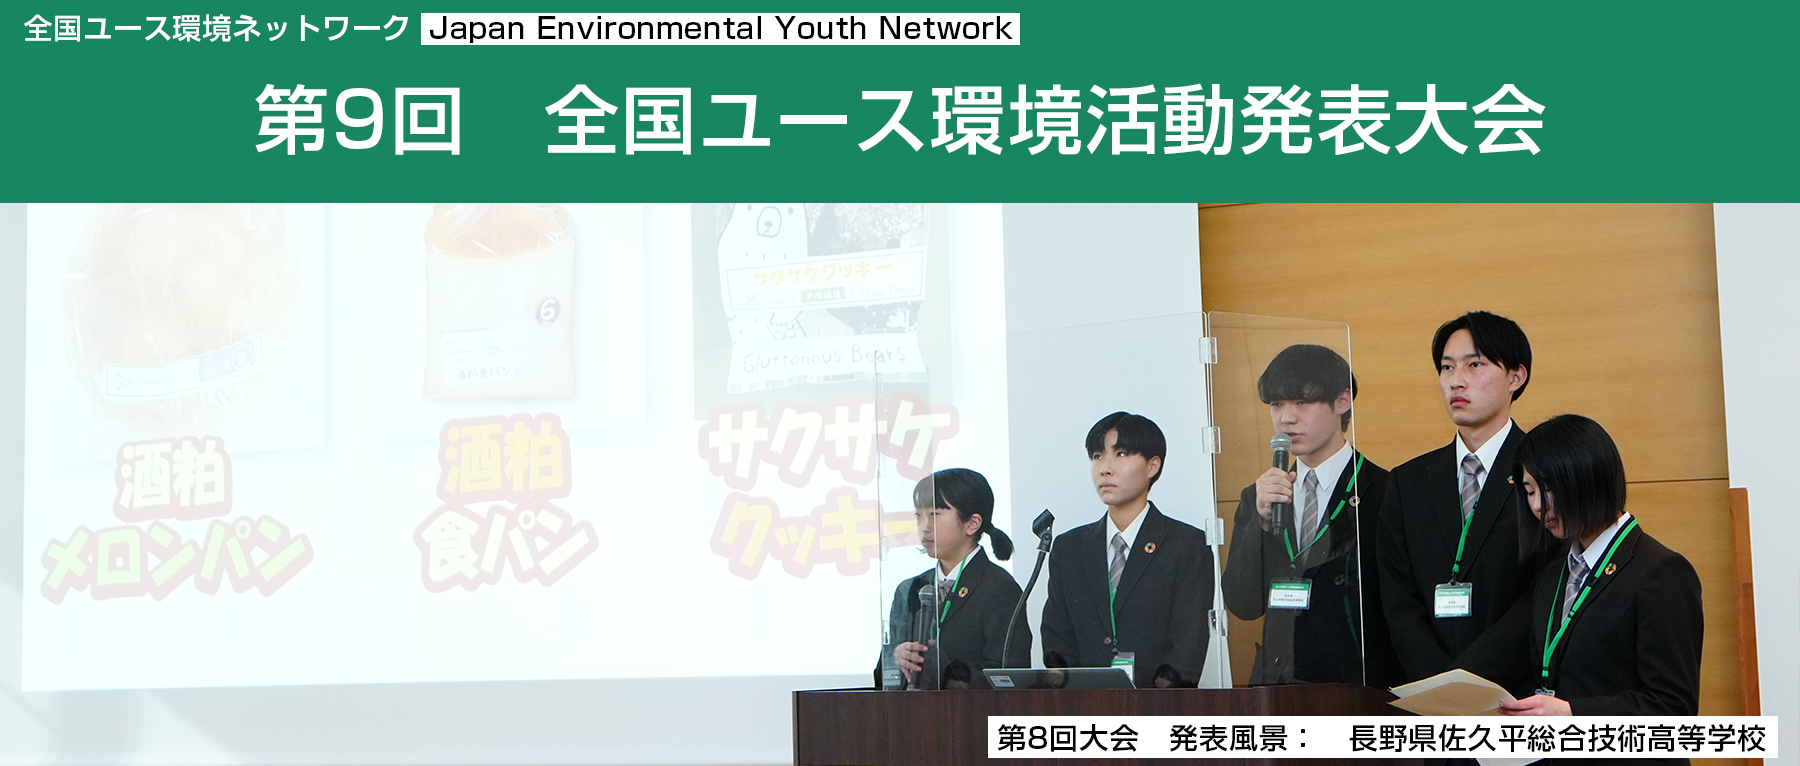 全国ユース環境ネットワーク　Japan Environmental Youth Network